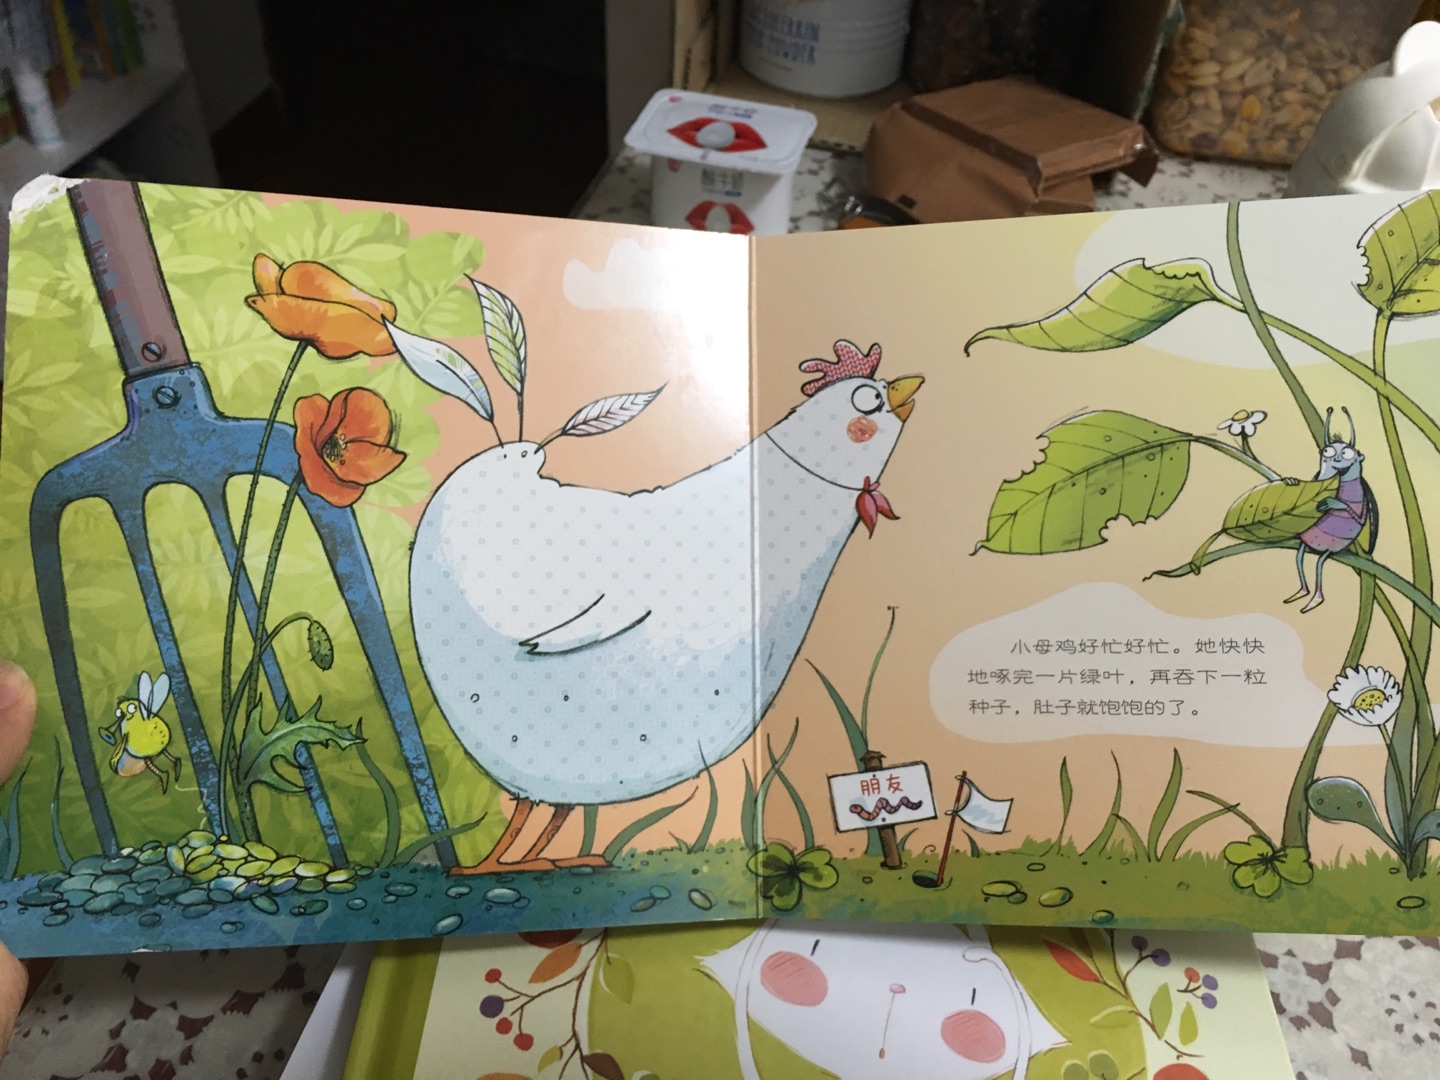 小母鸡，可忙了！！！元气满满的小母鸡，我宝宝觉得很有趣呢，她很喜欢！！！书本没多大，是硬壳书，很赞！！！